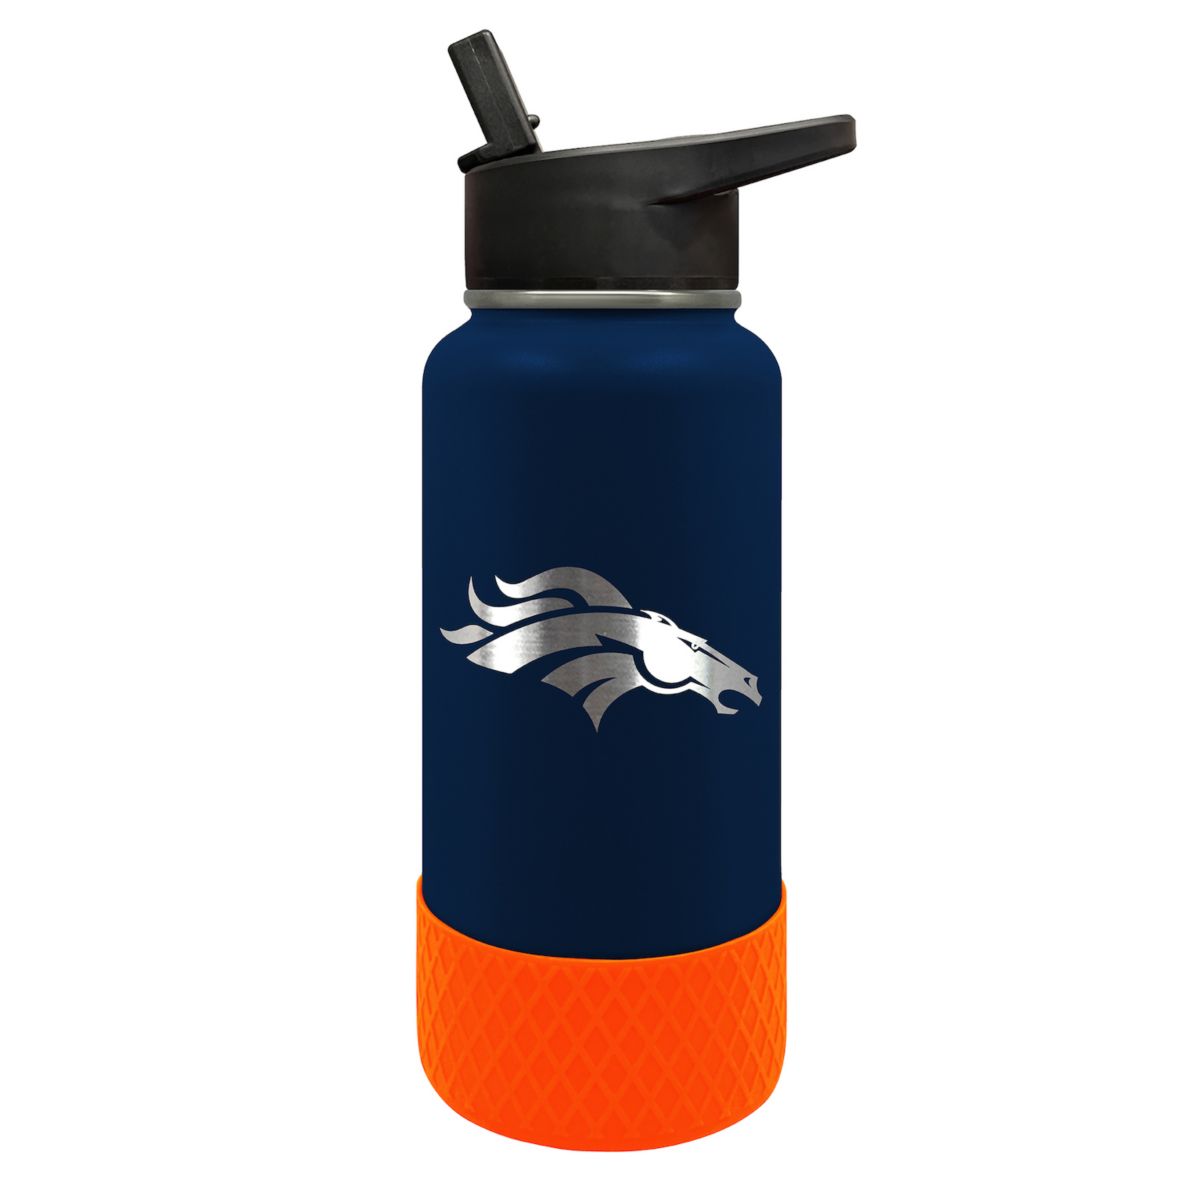 Denver Broncos NFL Thirst Hydration, 32 унции. Бутылка с водой NFL